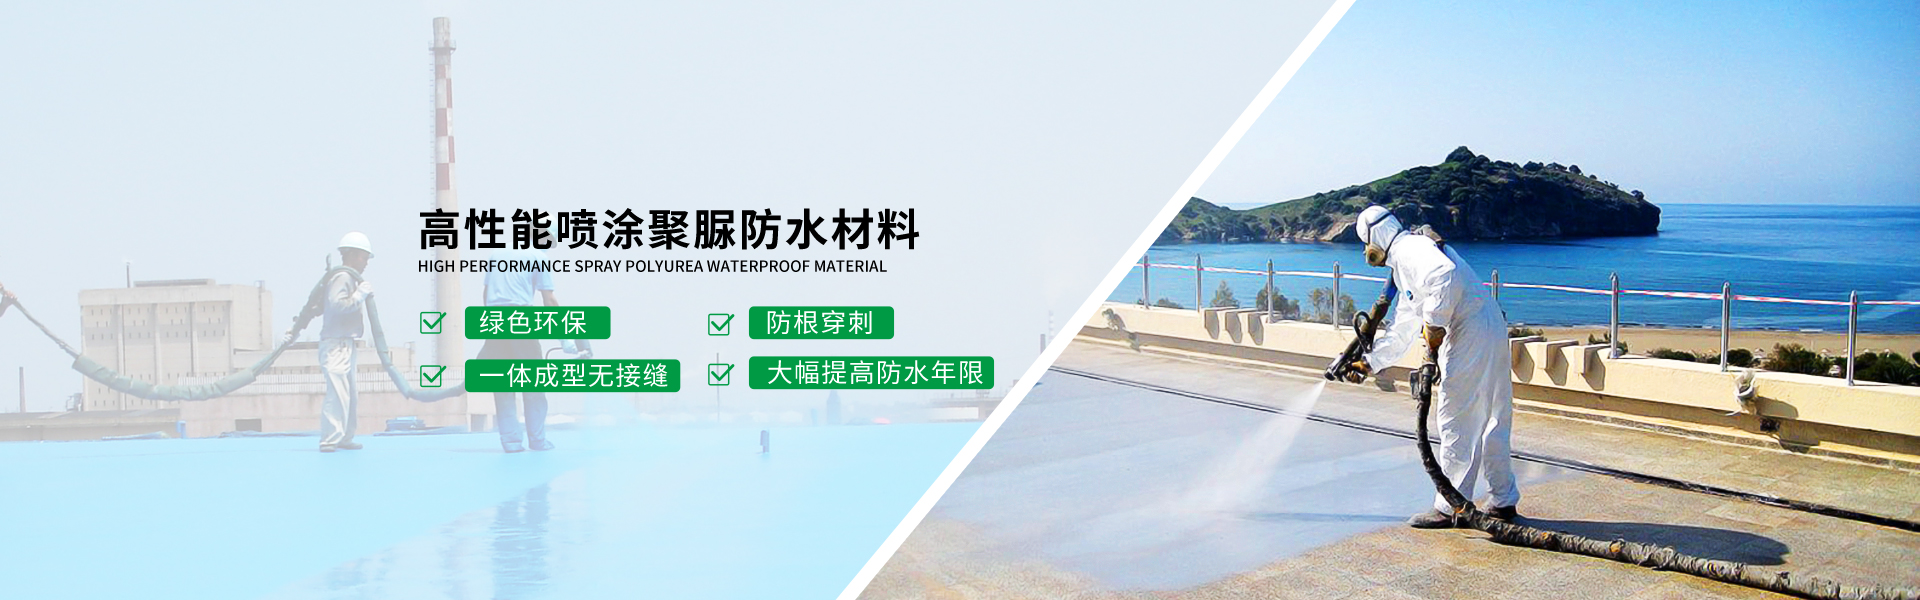 青岛海洋新材料主营聚脲防水,防水材料等产品